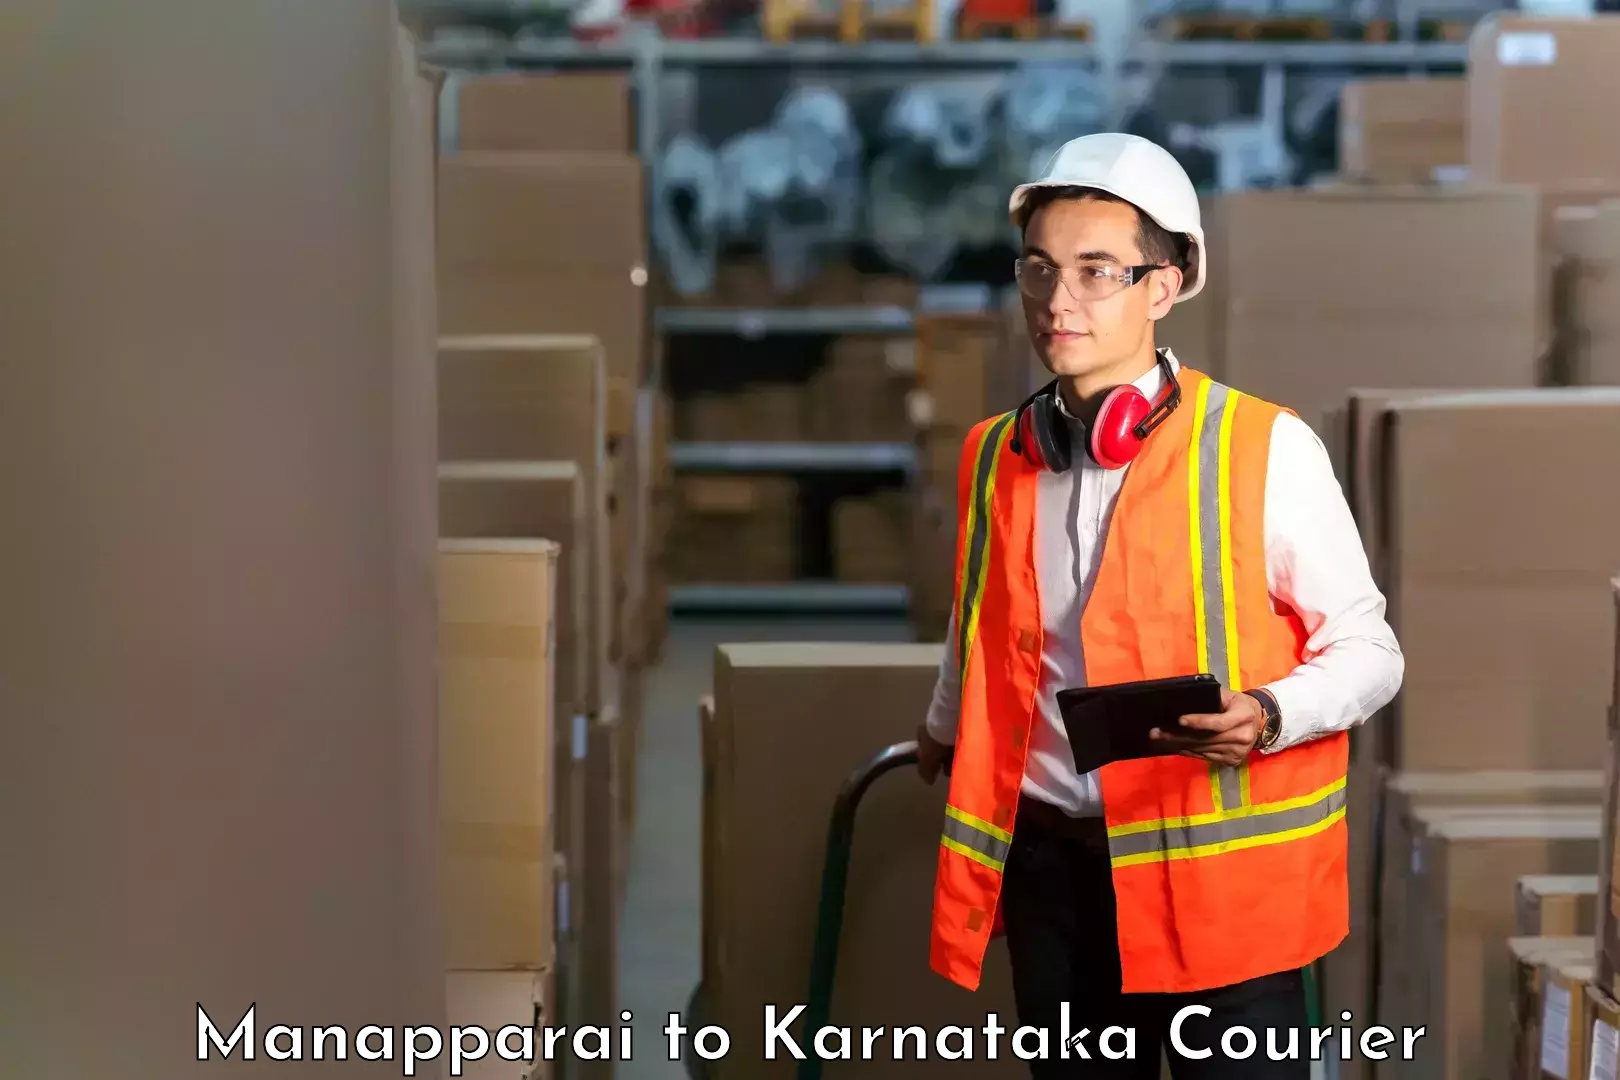 Parcel handling and care Manapparai to Karnataka